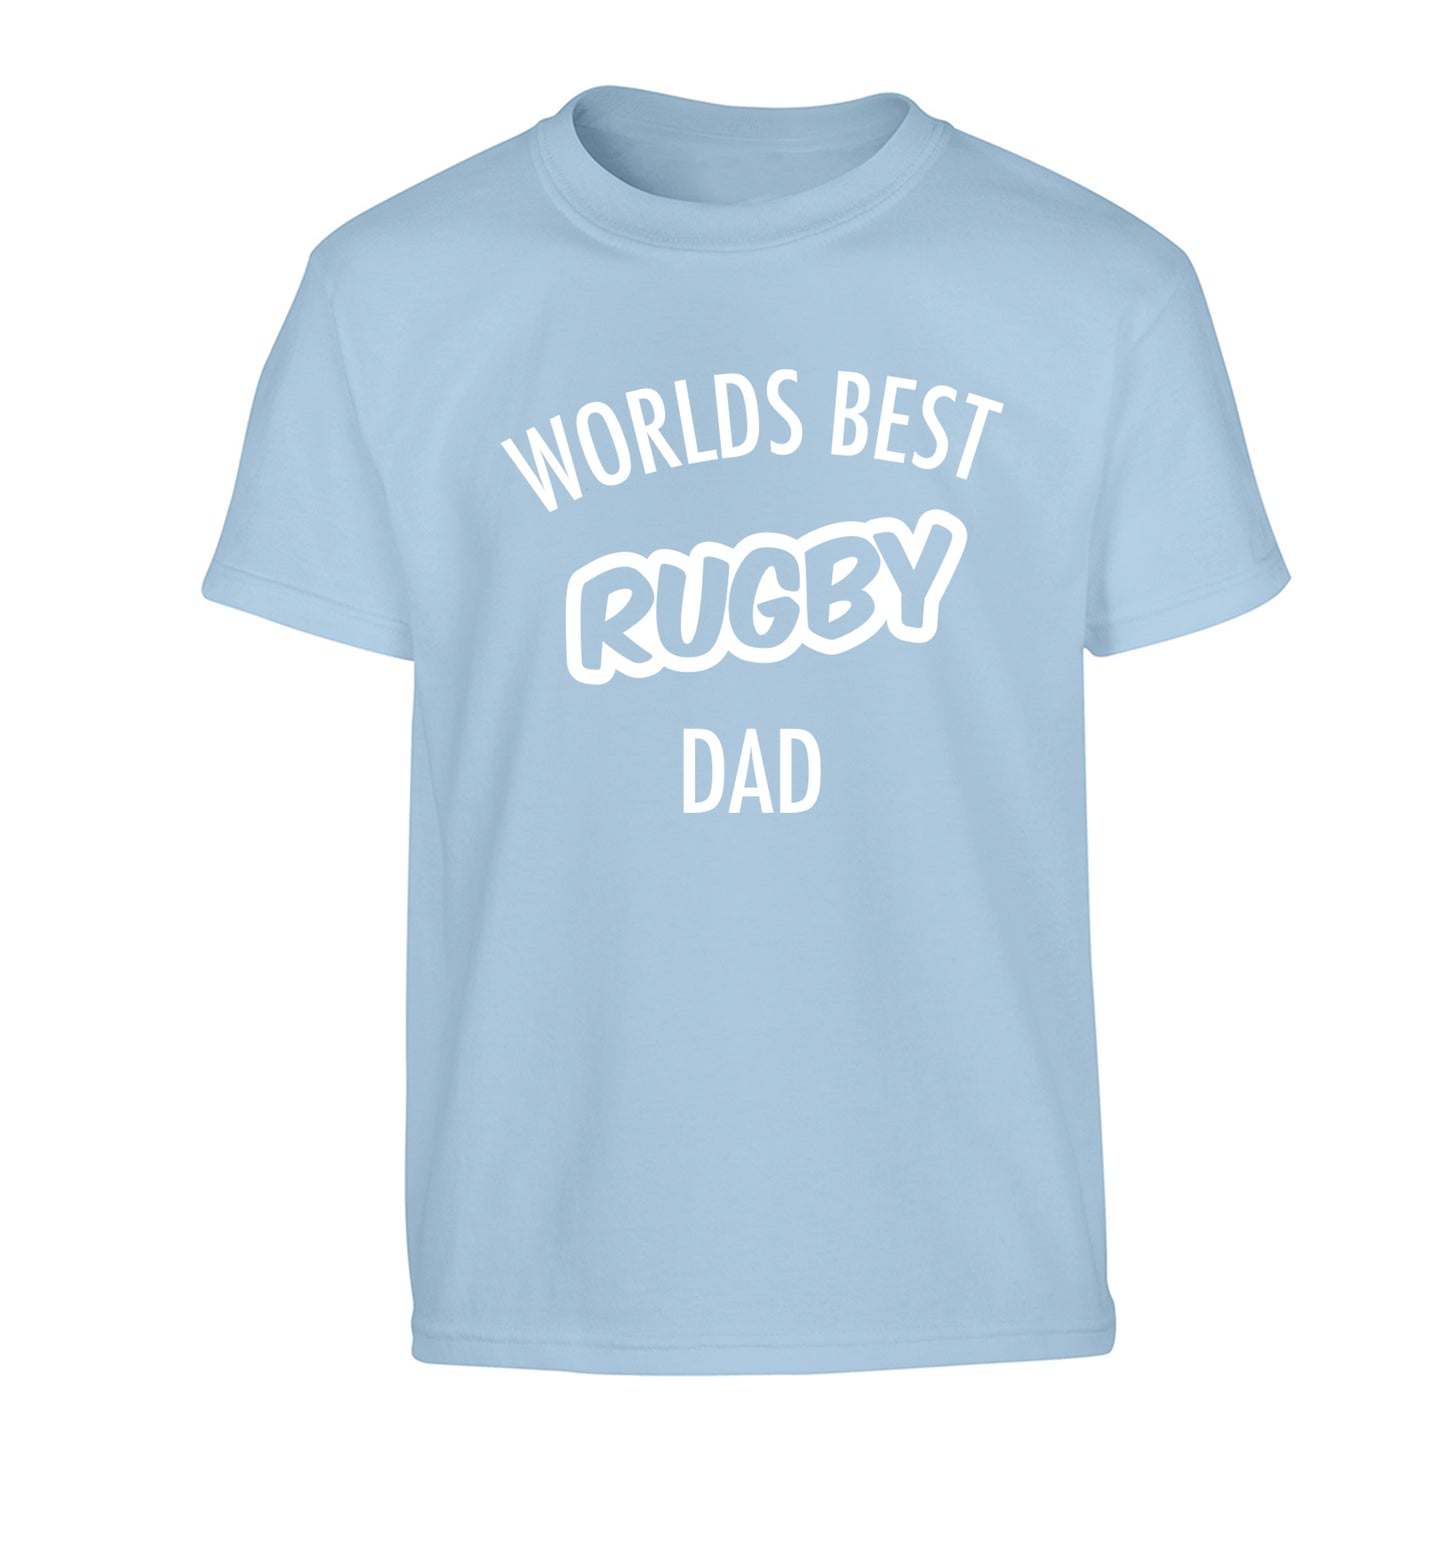 Worlds best rugby dad Children's light blue Tshirt 12-13 Years